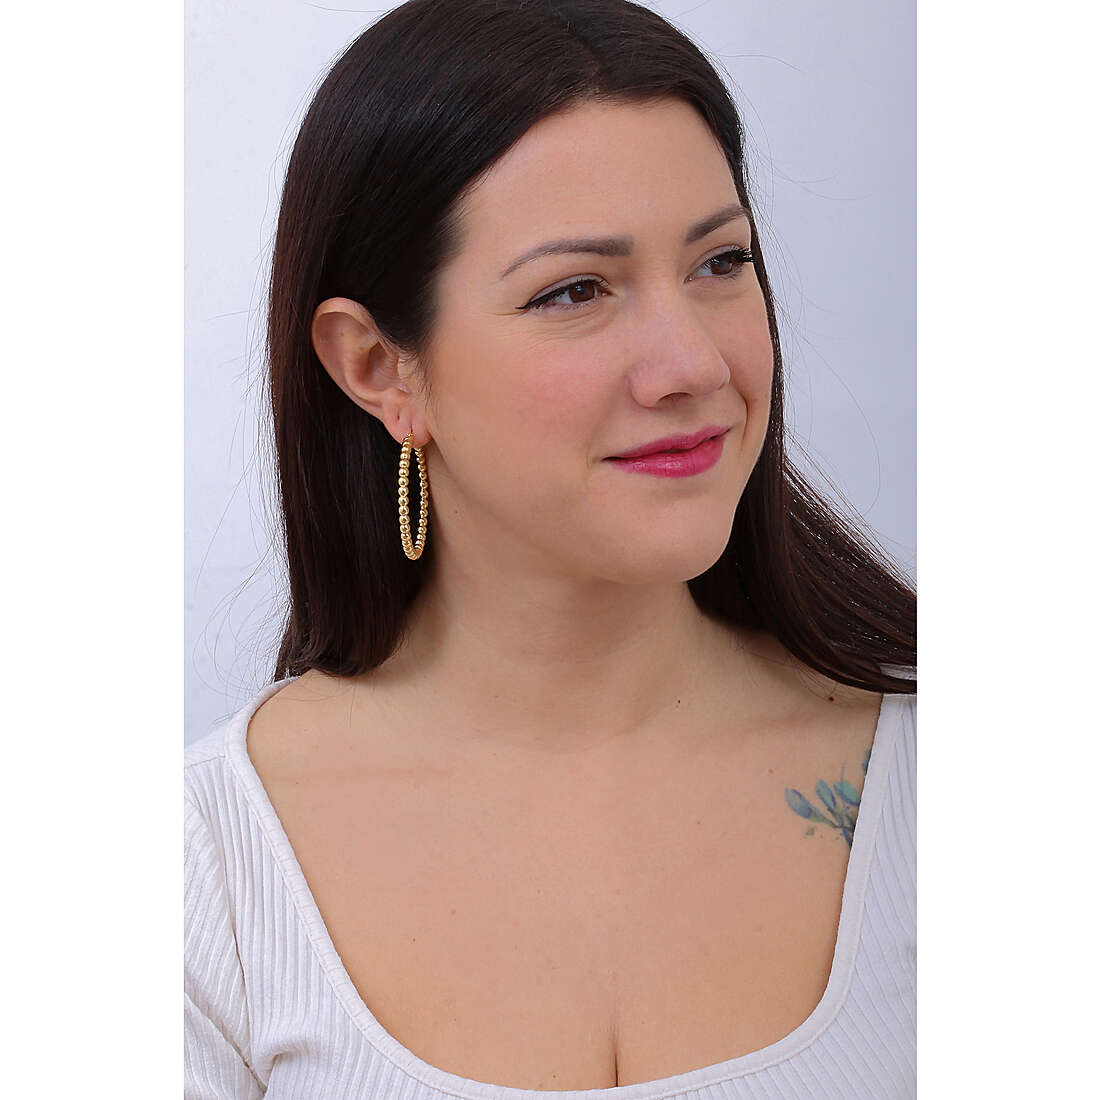 Unoaerre Fashion Jewellery earrings woman 1AR2170 wearing